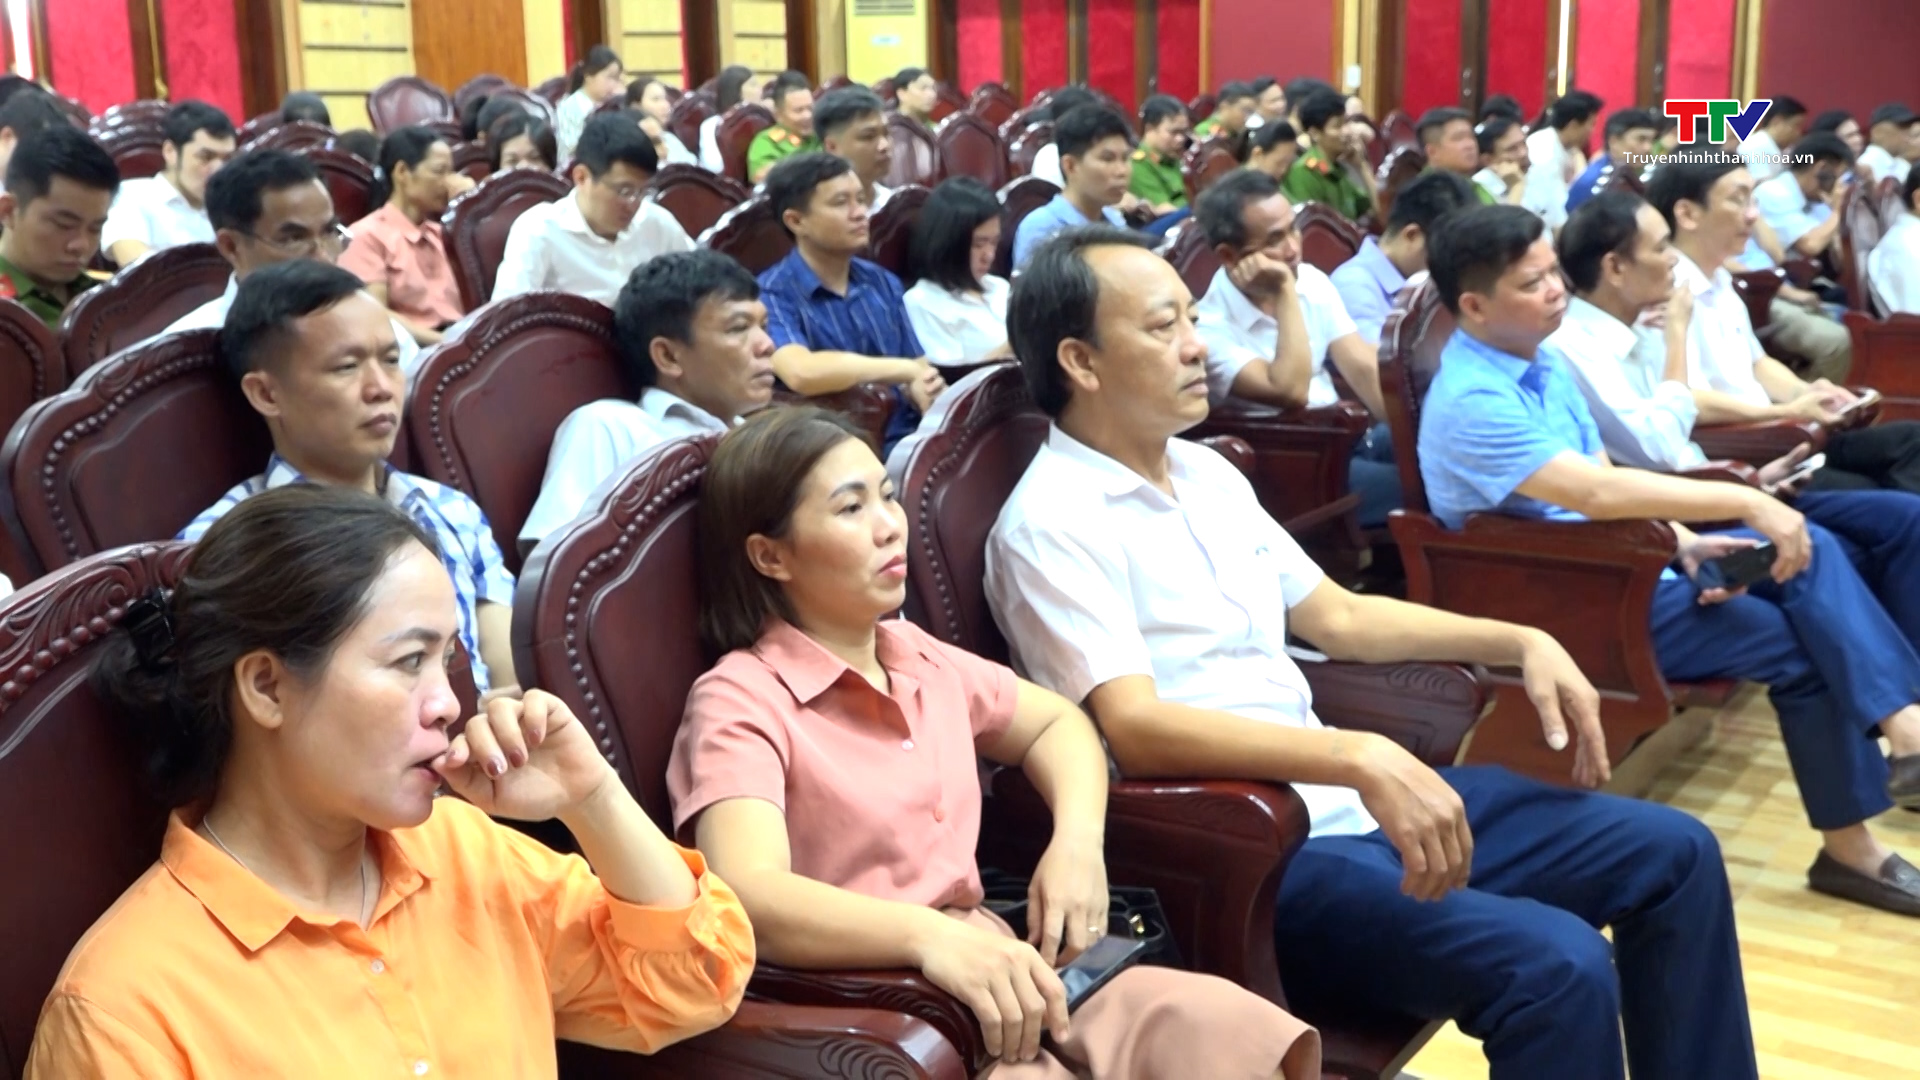 Huyện uỷ Vĩnh Lộc cập nhật kiến thức bảo vệ nền tảng tư tưởng của Đảng, đấu tranh phản bác các quan điểm sai trái thù địch- Ảnh 2.